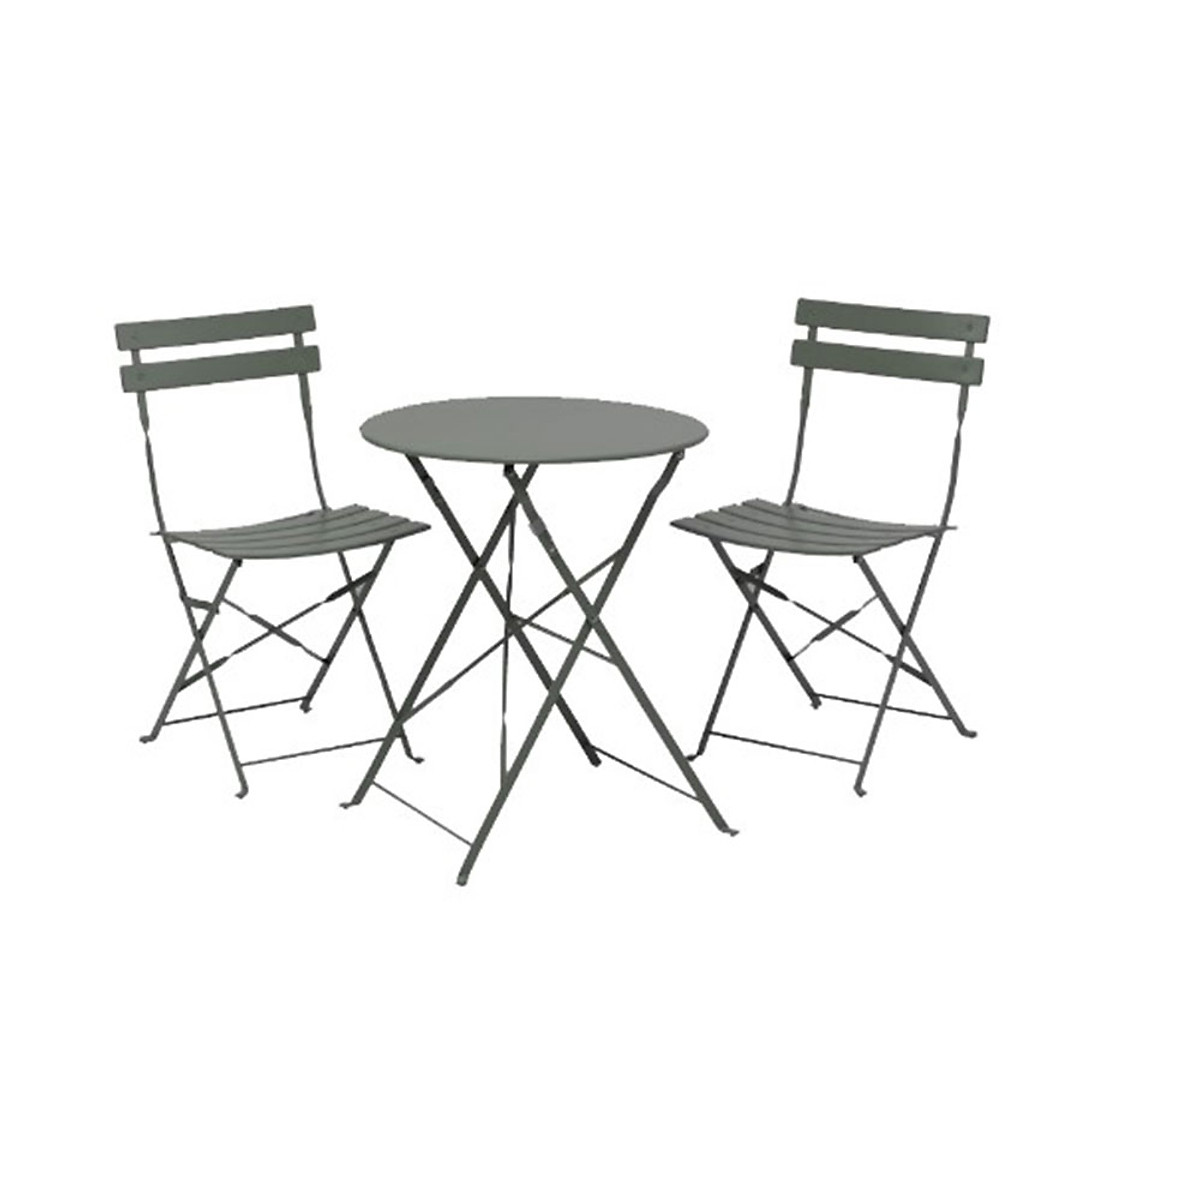 Bộ bàn ghế ngoài trời JYSK Tivoli sắt sơn tĩnh điện xám 2 ghế 42x46x82cm,1 bàn:DK60x71cm